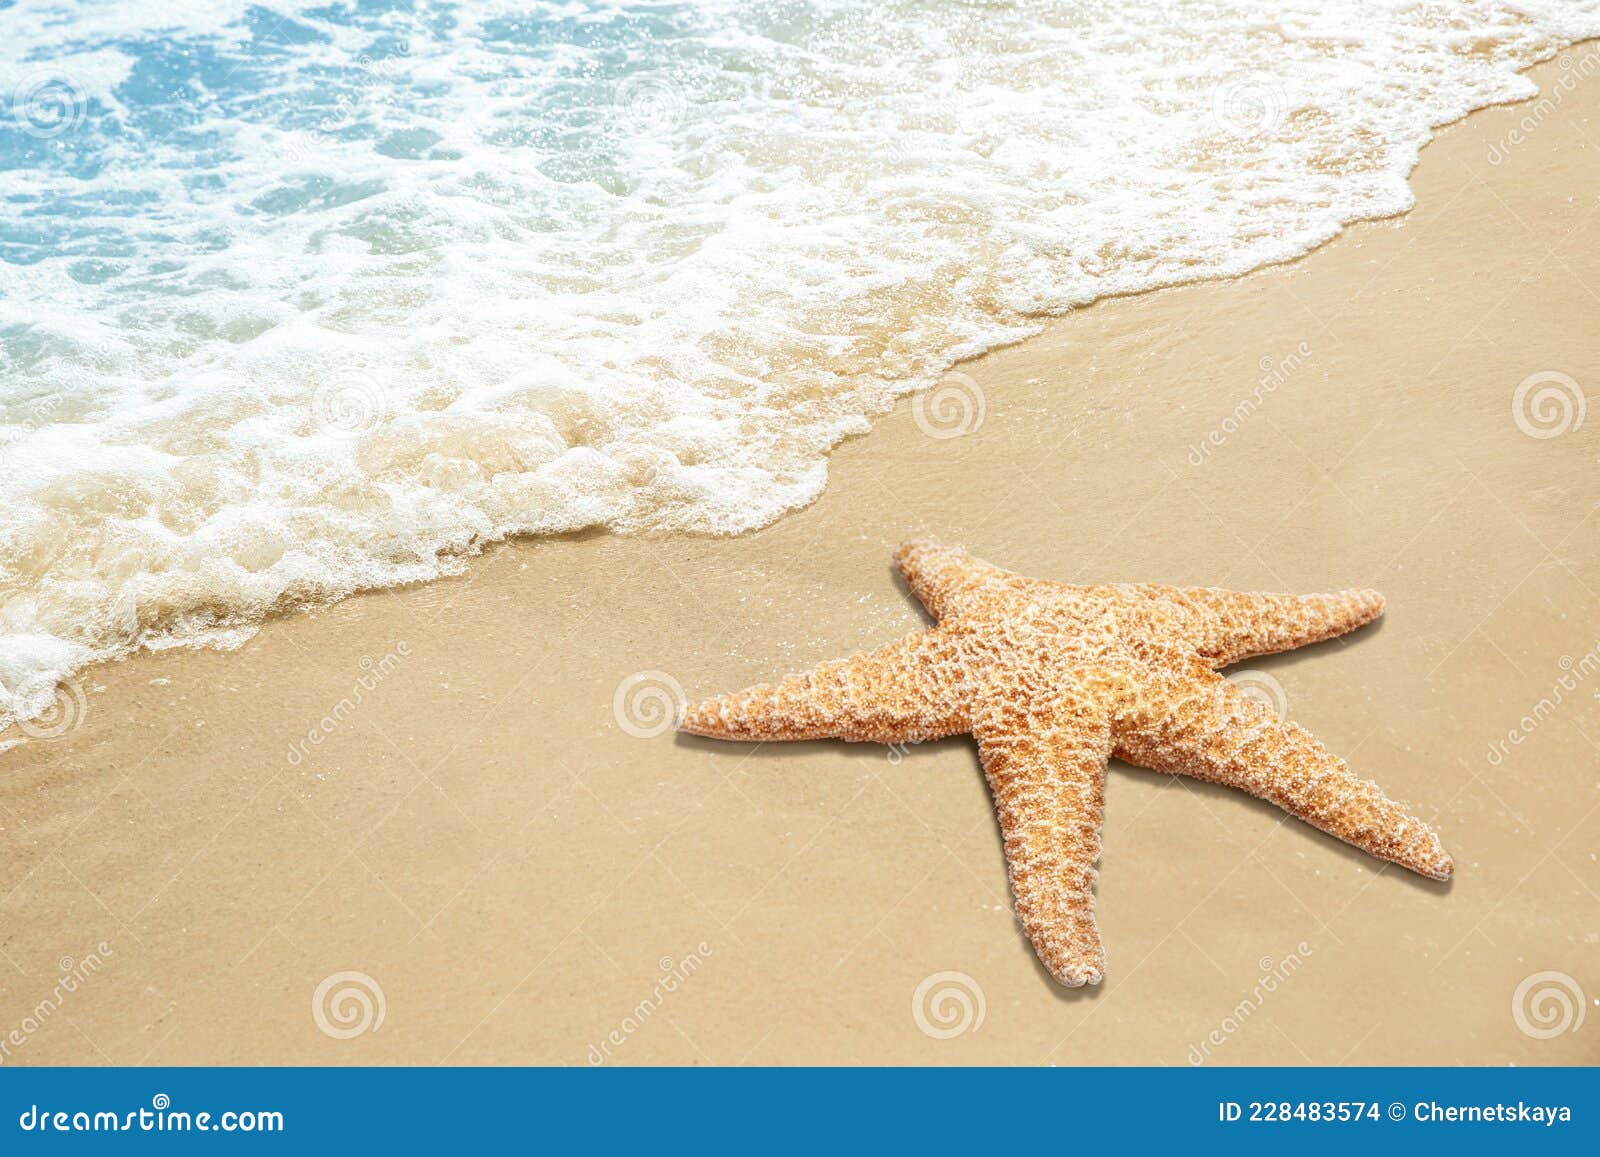 沙滩海星图片_自然风景_自然景观_图行天下图库